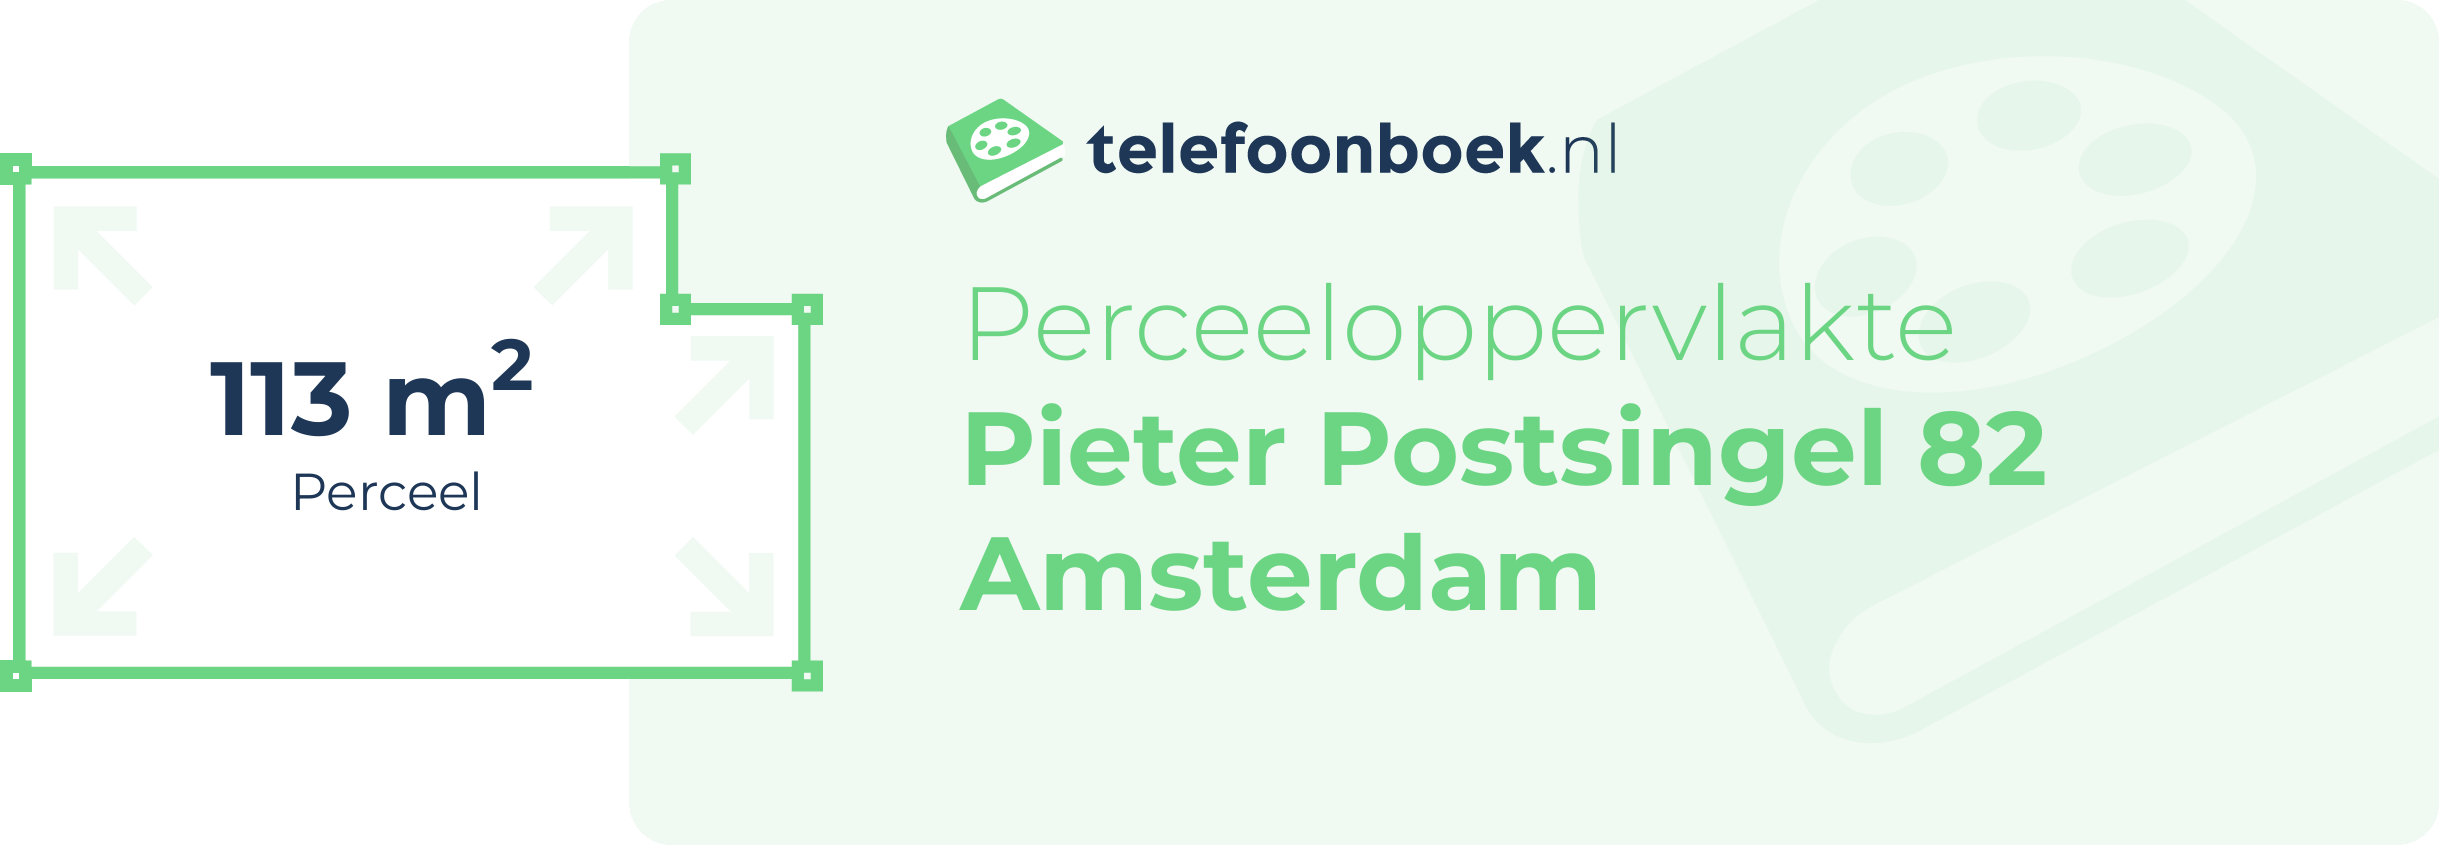 Perceeloppervlakte Pieter Postsingel 82 Amsterdam